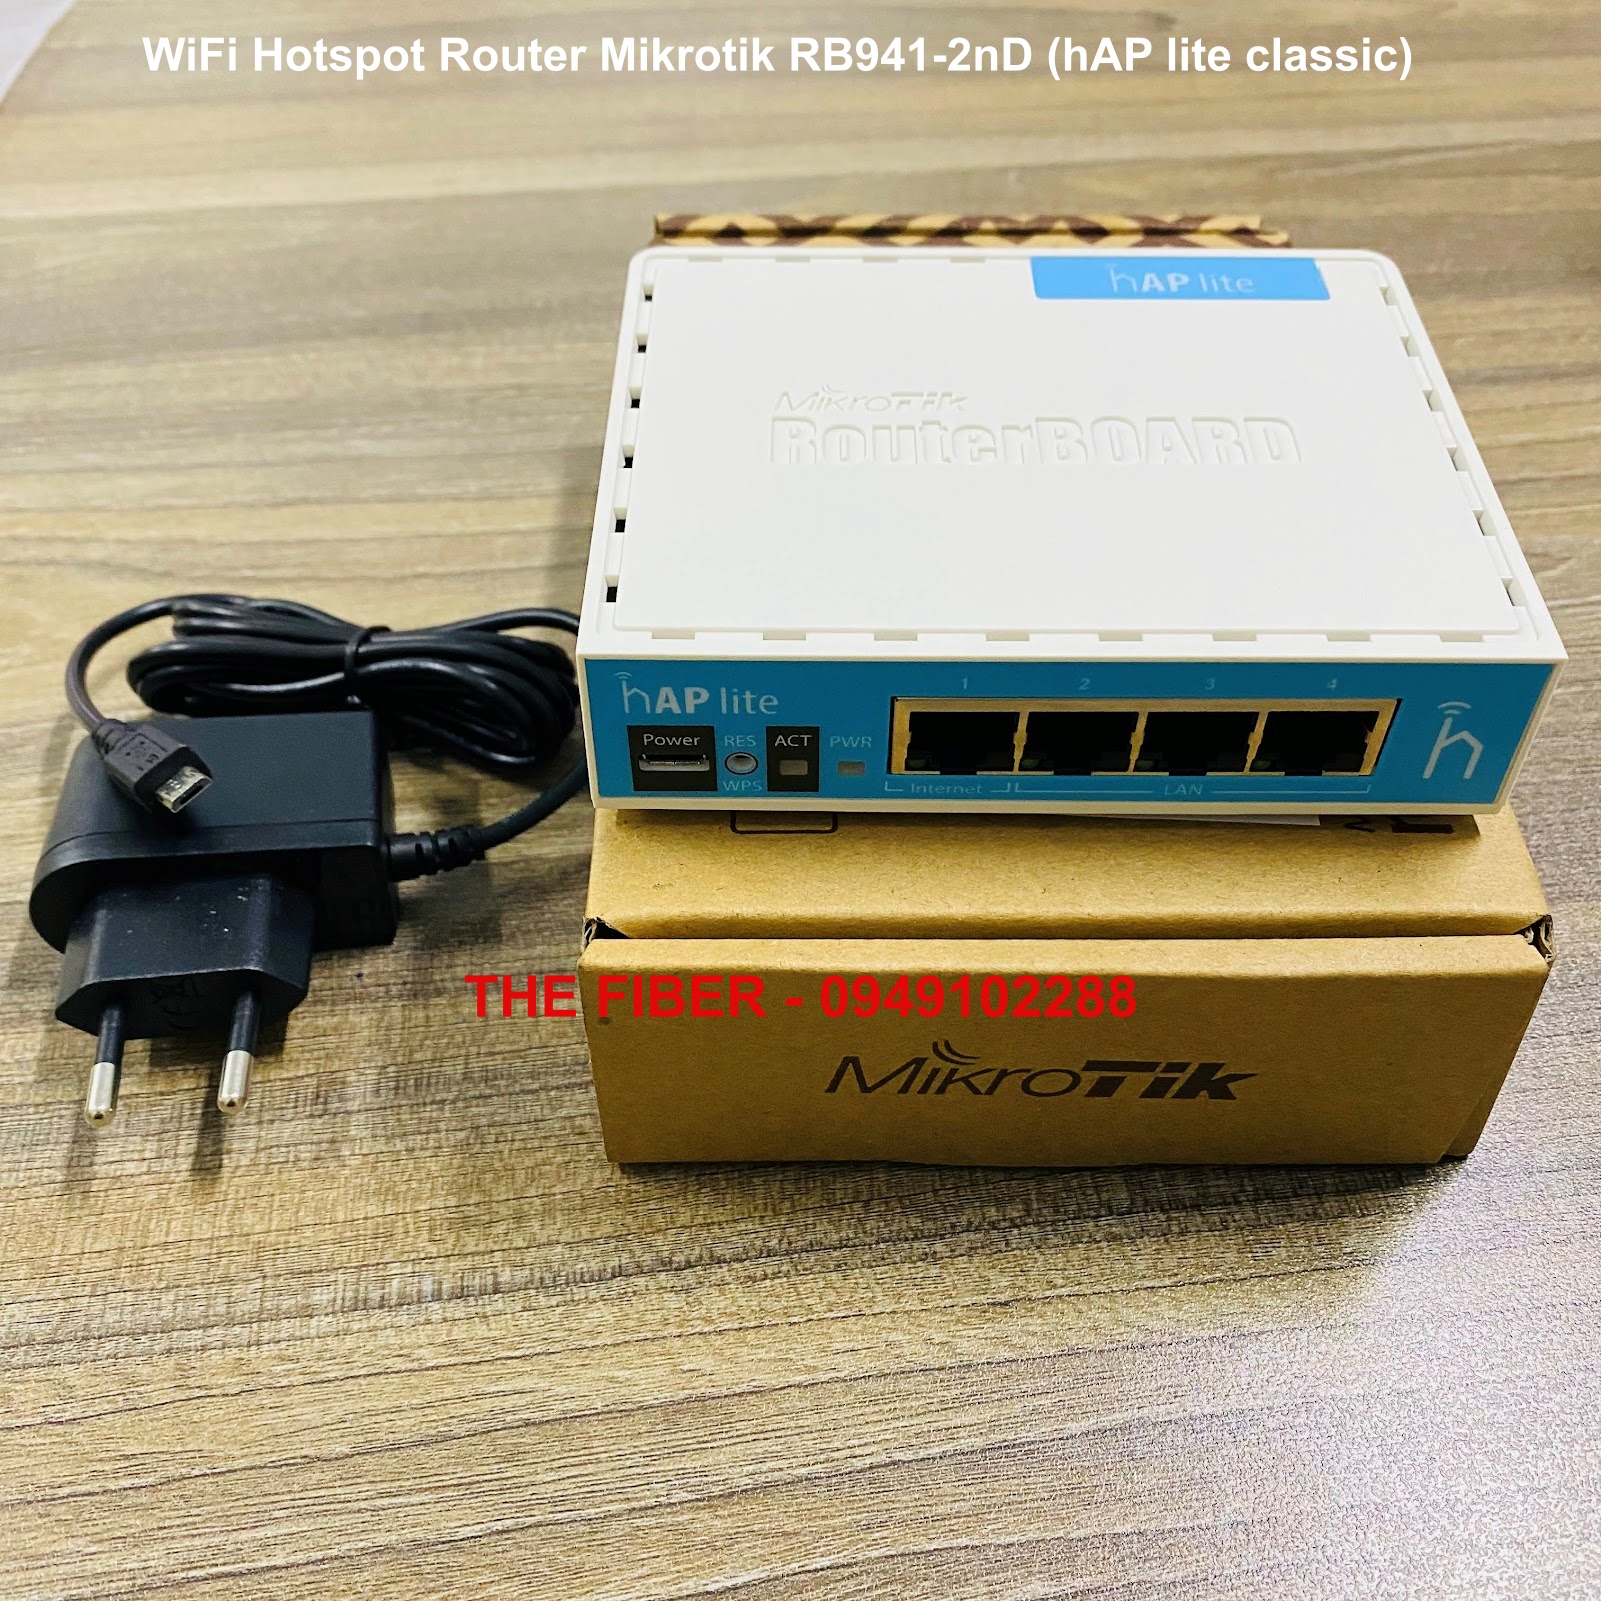 WiFi Hotspot Router Mikrotik RB941-2nD hAP lite classic